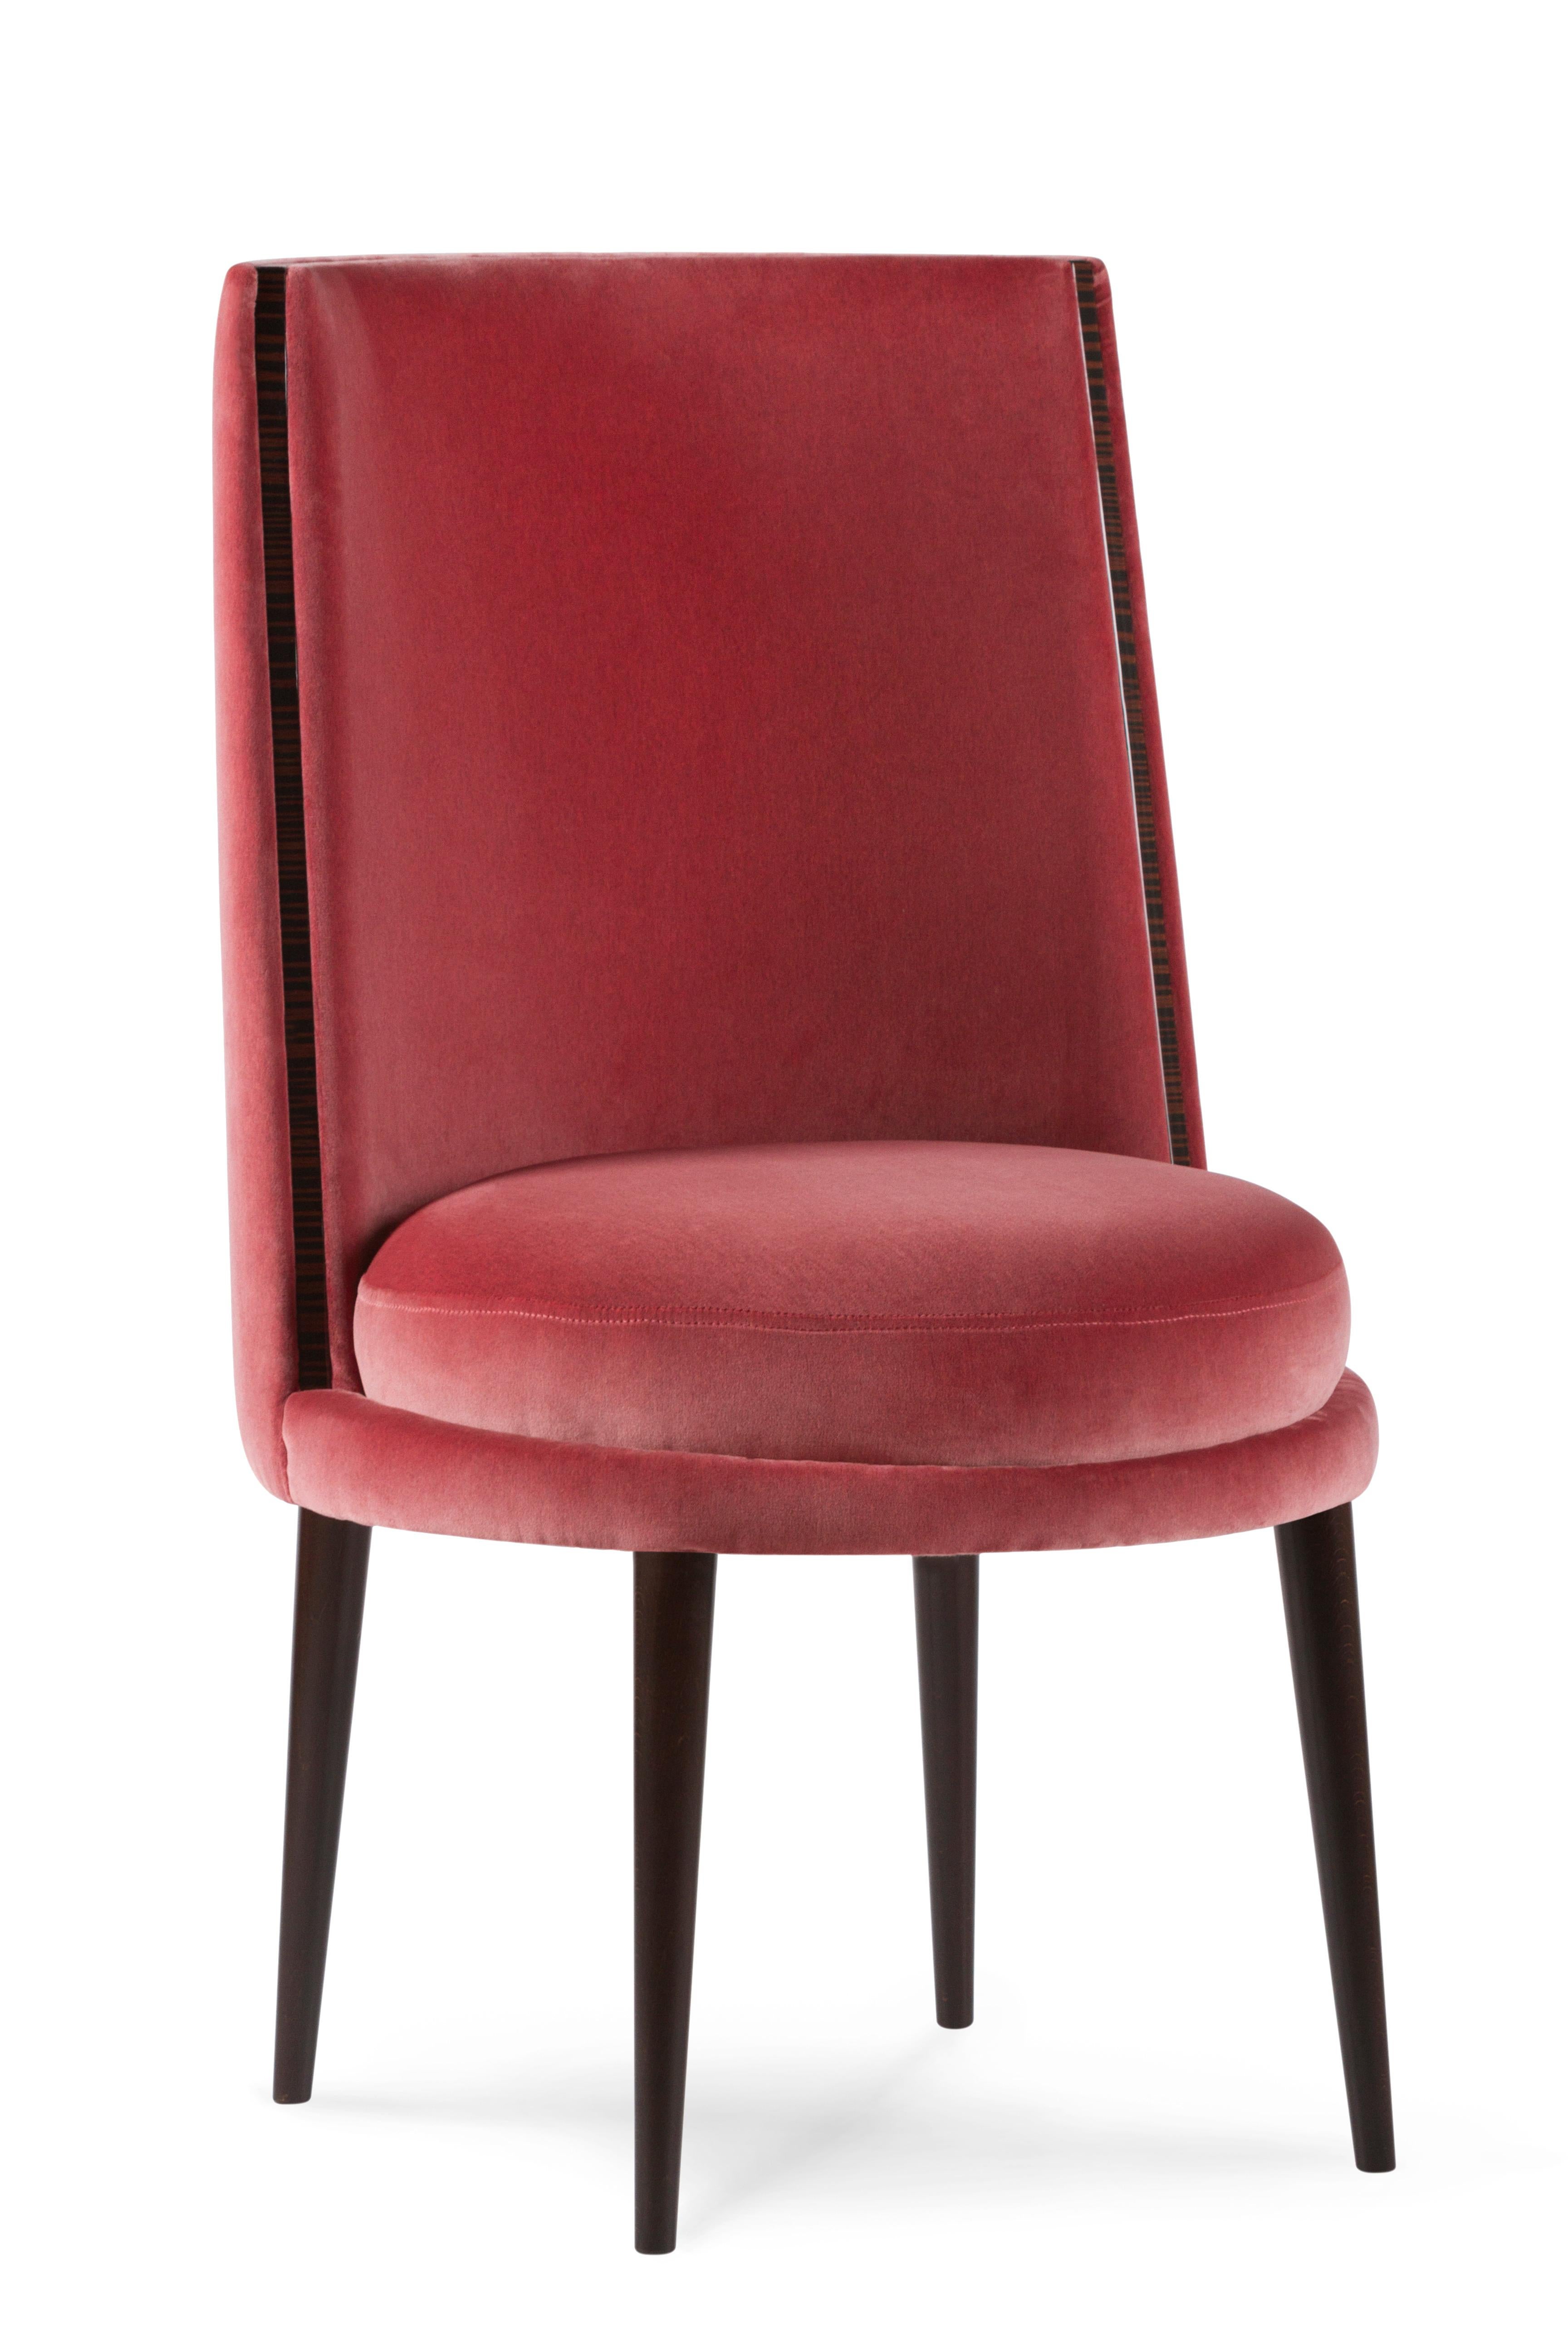 Modern De Castro Dining Chairs, Velvet, Beech, Handmade Portugal by Greenapple For Sale 11